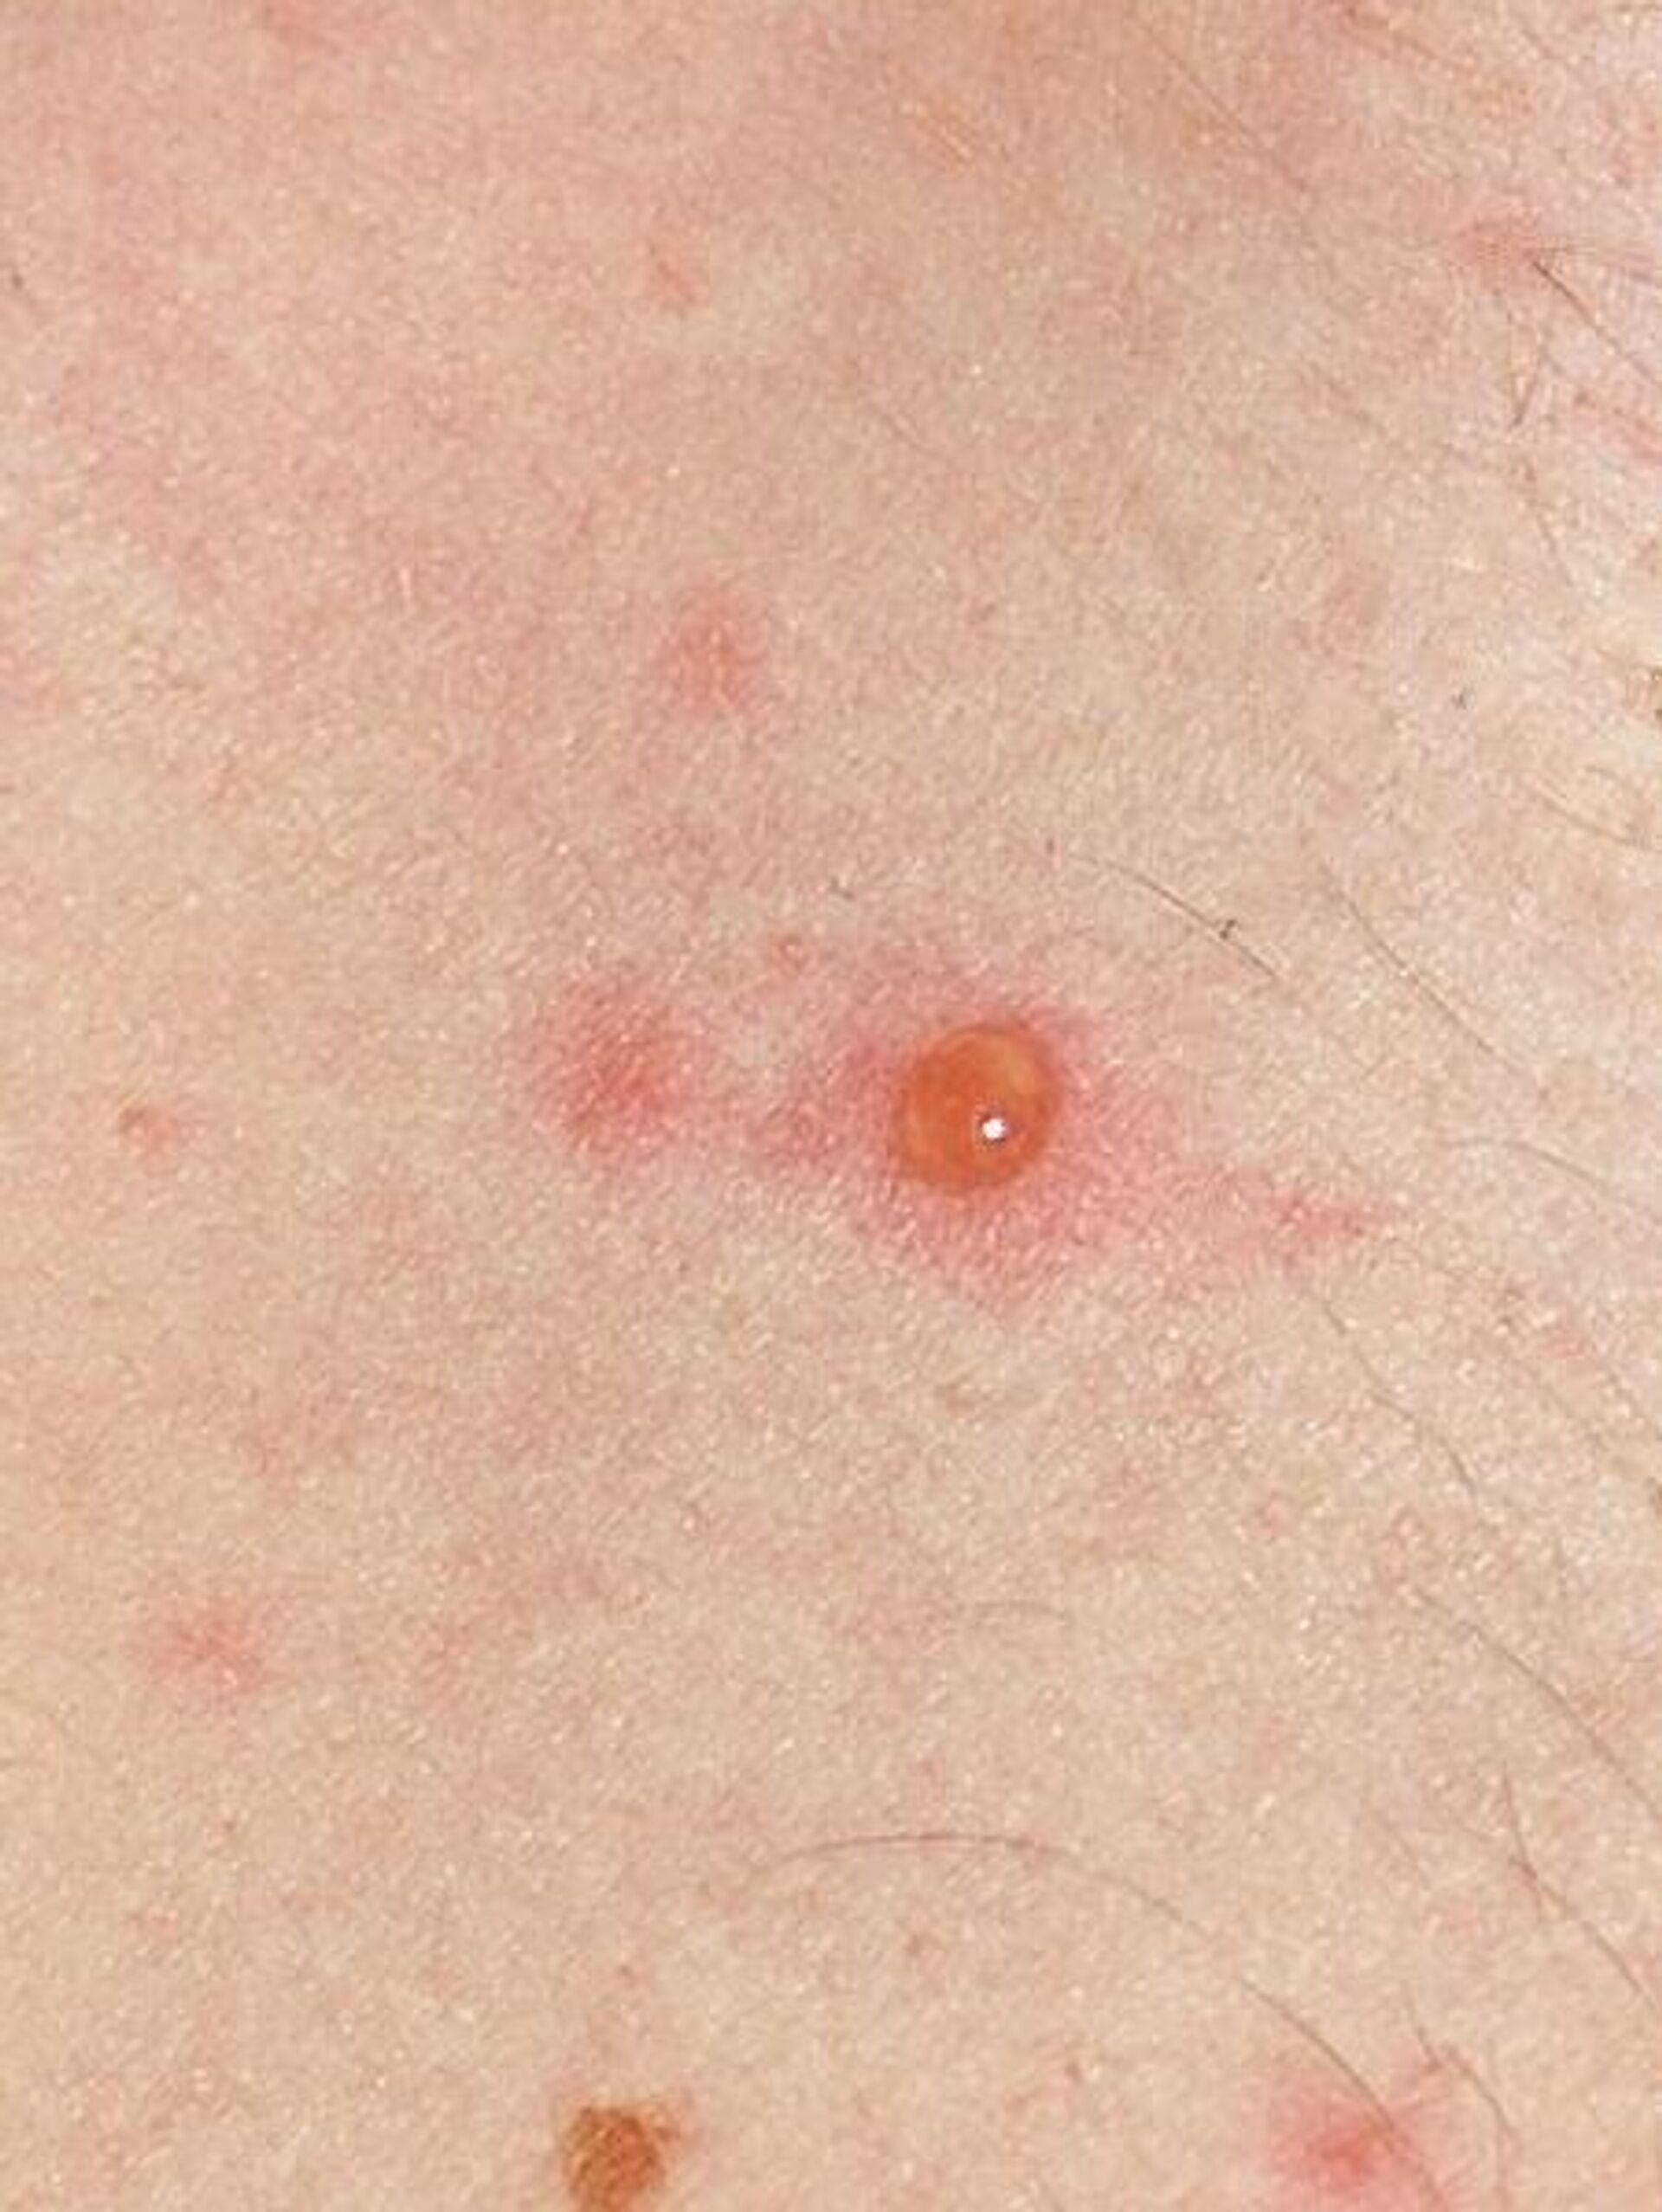 bube pe corpul unei persoane provocate de varicela